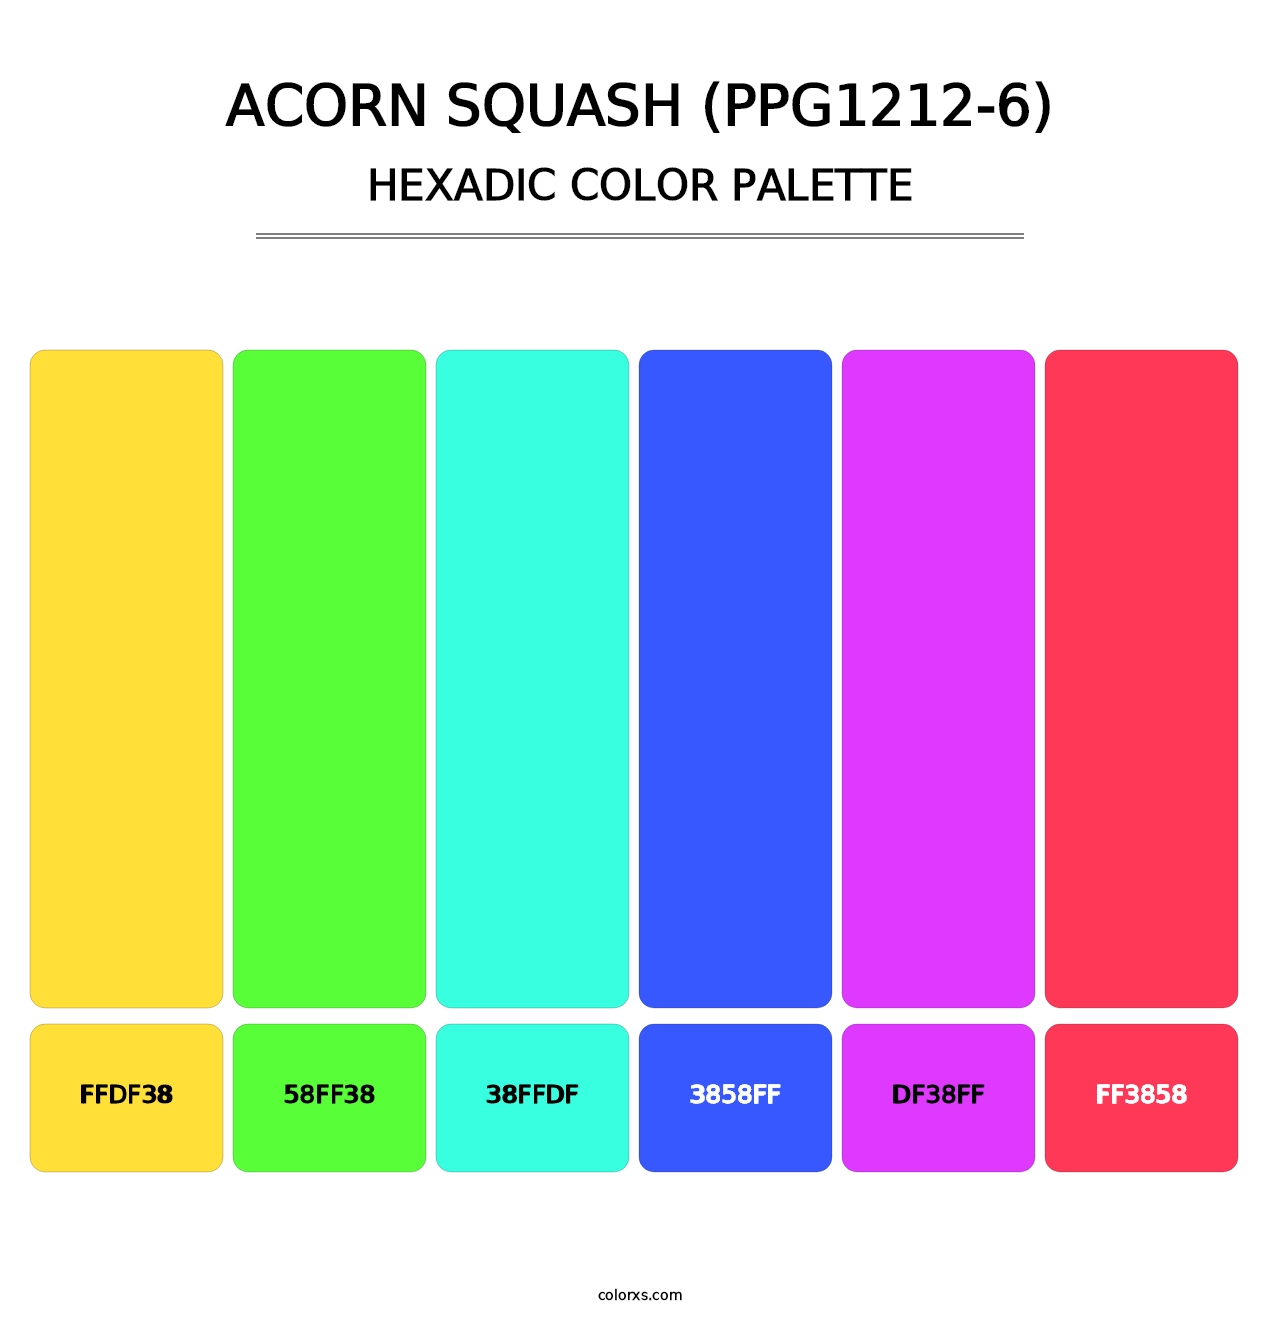 Acorn Squash (PPG1212-6) - Hexadic Color Palette